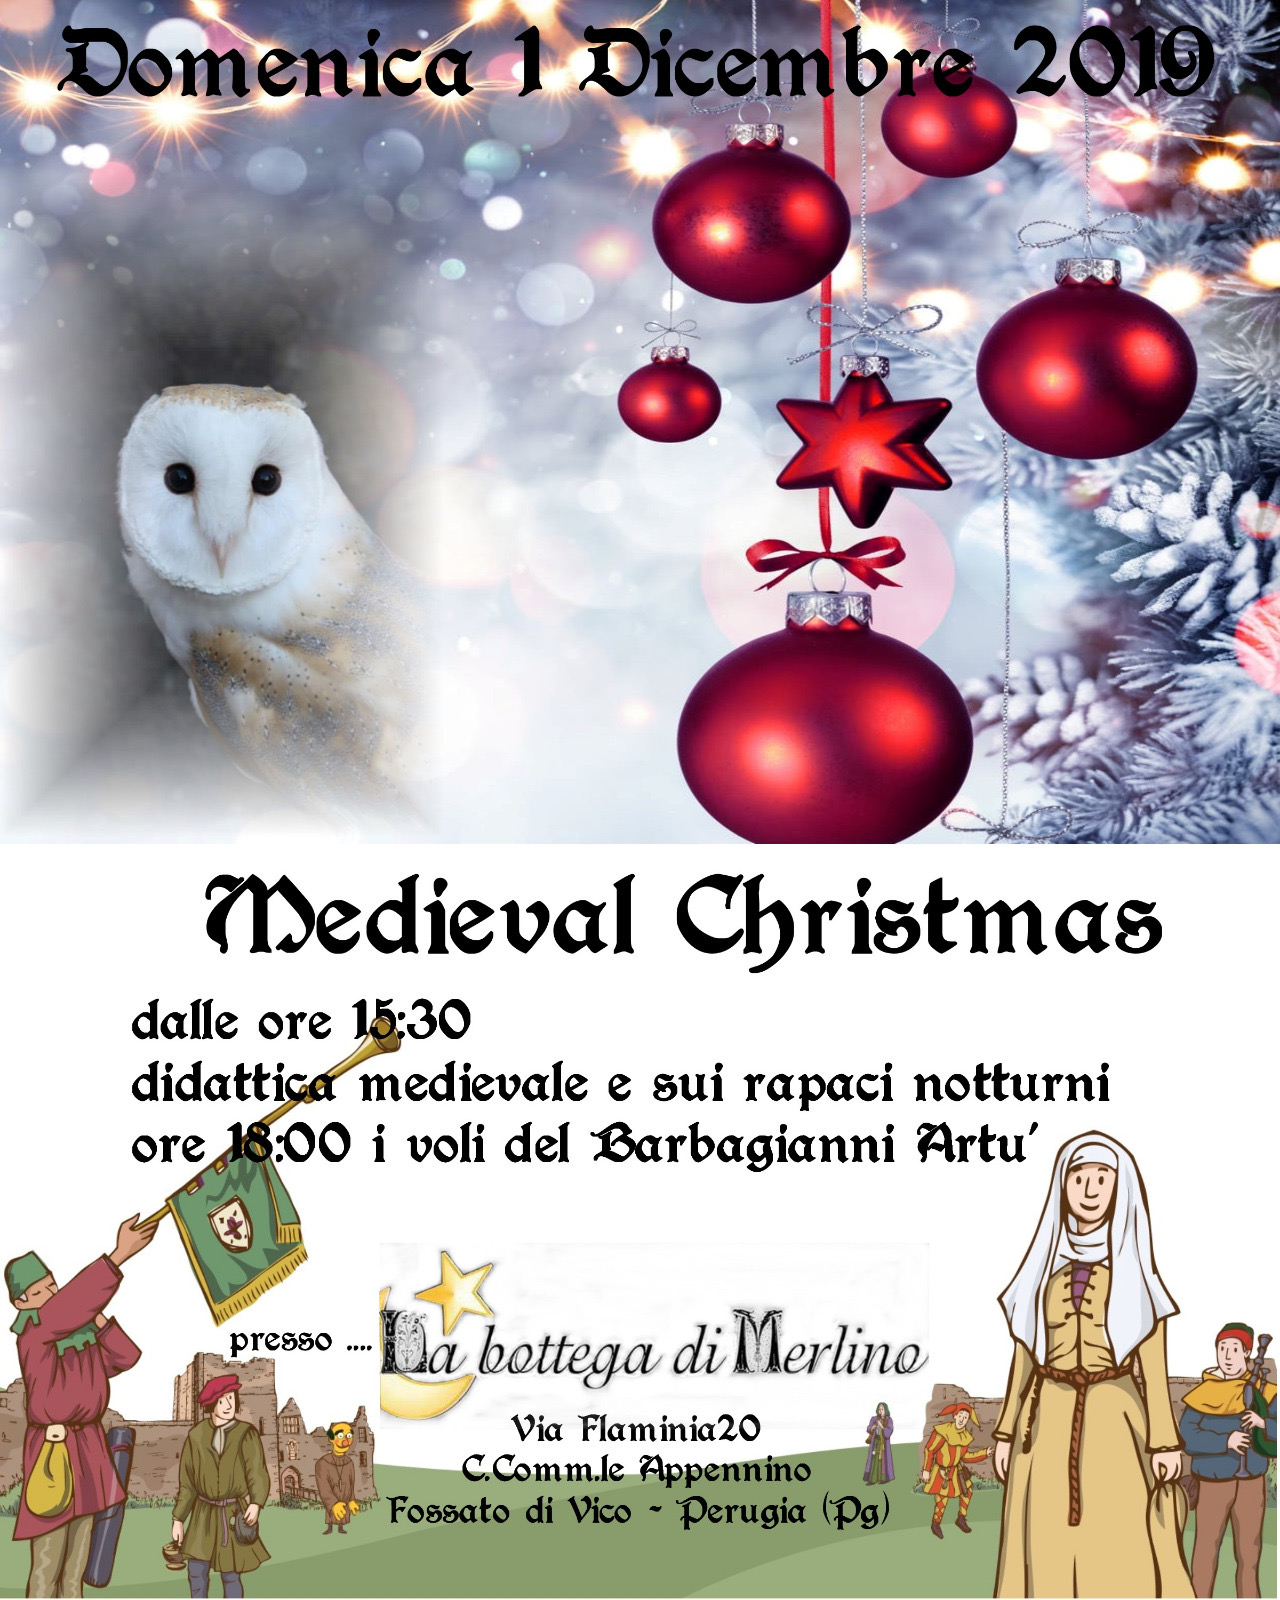 Medieval Christmas: Domenica 1 Dicembre dalle 15:30, Vi aspettiamo a Negozio!!!